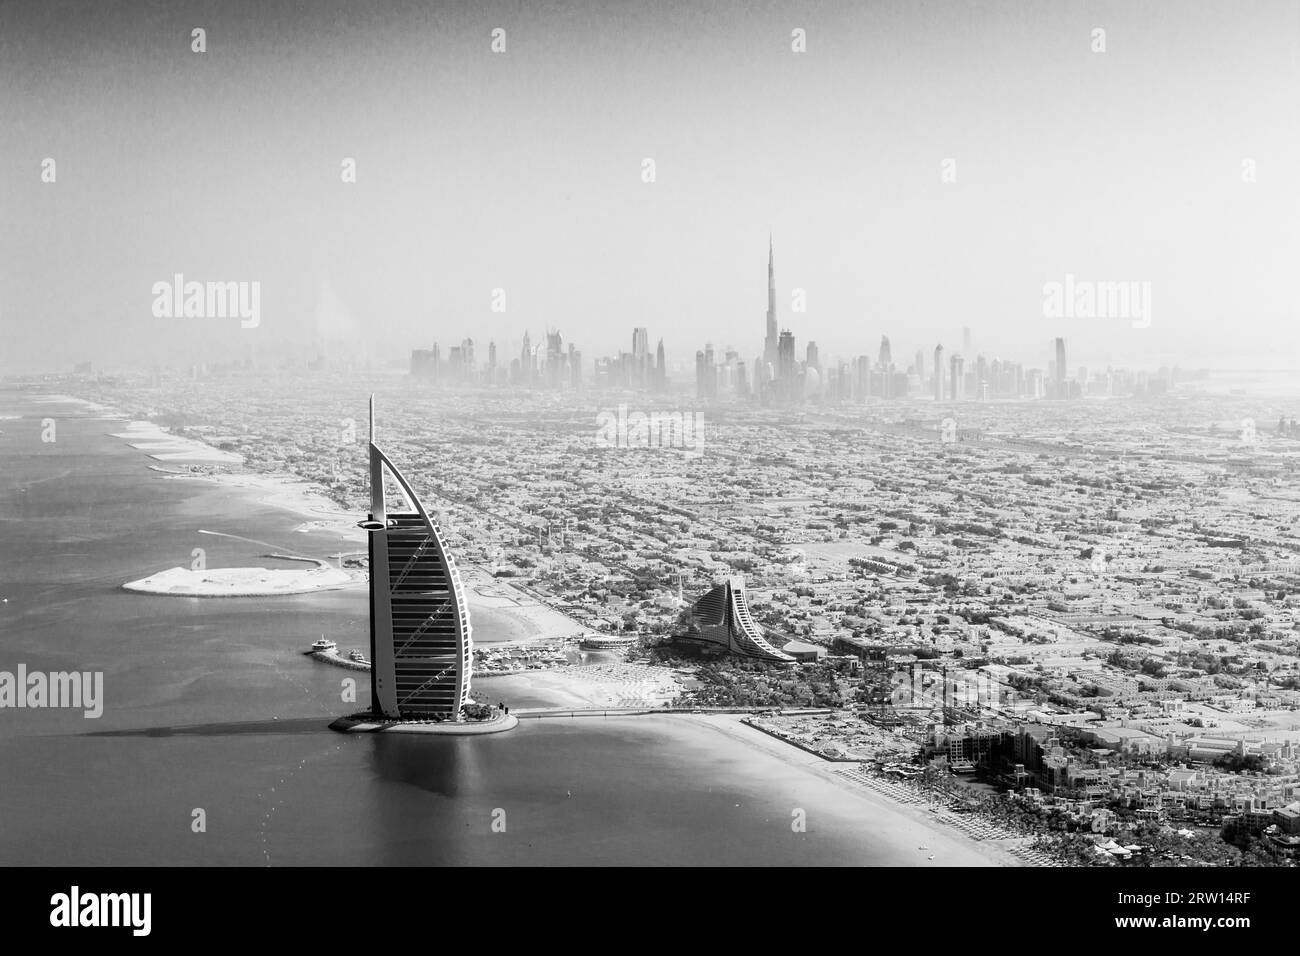 Dubaï, Émirats arabes Unis, 17 octobre 2014 : le célèbre hôtel Burj Al Arab et les toits de Dubaï pris d'un hydravion en noir et blanc Banque D'Images